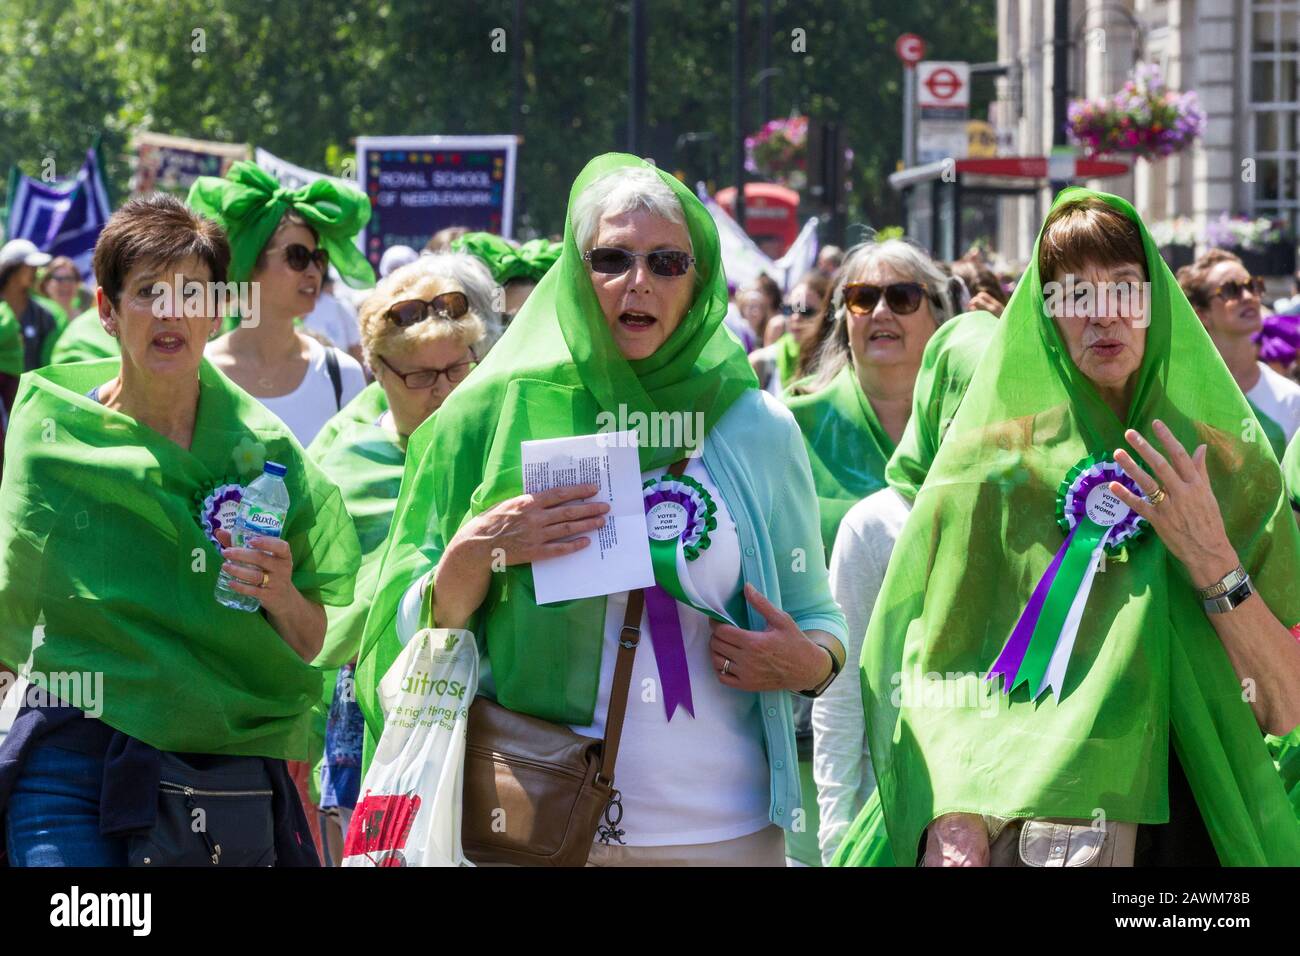 La messa di marzo segna 100 anni di voti delle donne, Central London, UK 10 giugno 2018. Insieme donne provenienti dal Regno Unito hanno marciato le strade per creare un'opera d'arte vivente, producendo un mare di verde, bianco e viola - i colori del movimento delle suffragette. Foto Stock